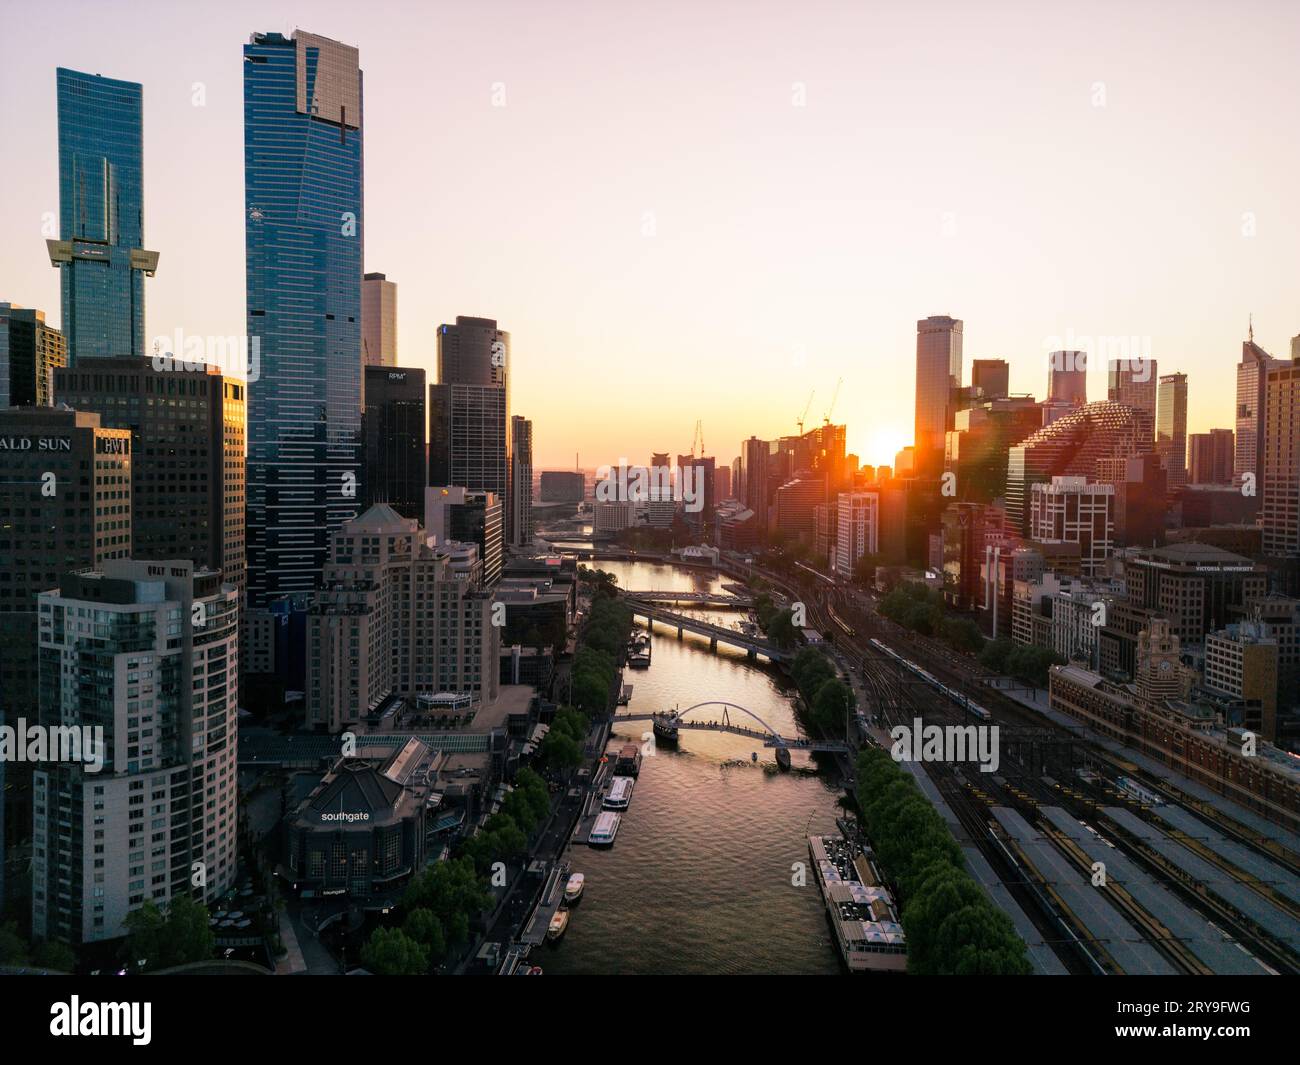 Une vue sur la rivière Yarra flanquait mes grands buidlings de la ville, des bateaux amarrés sur les rives et des ponts de promenade pris au coucher du soleil à Melbourne, en Australie. Banque D'Images